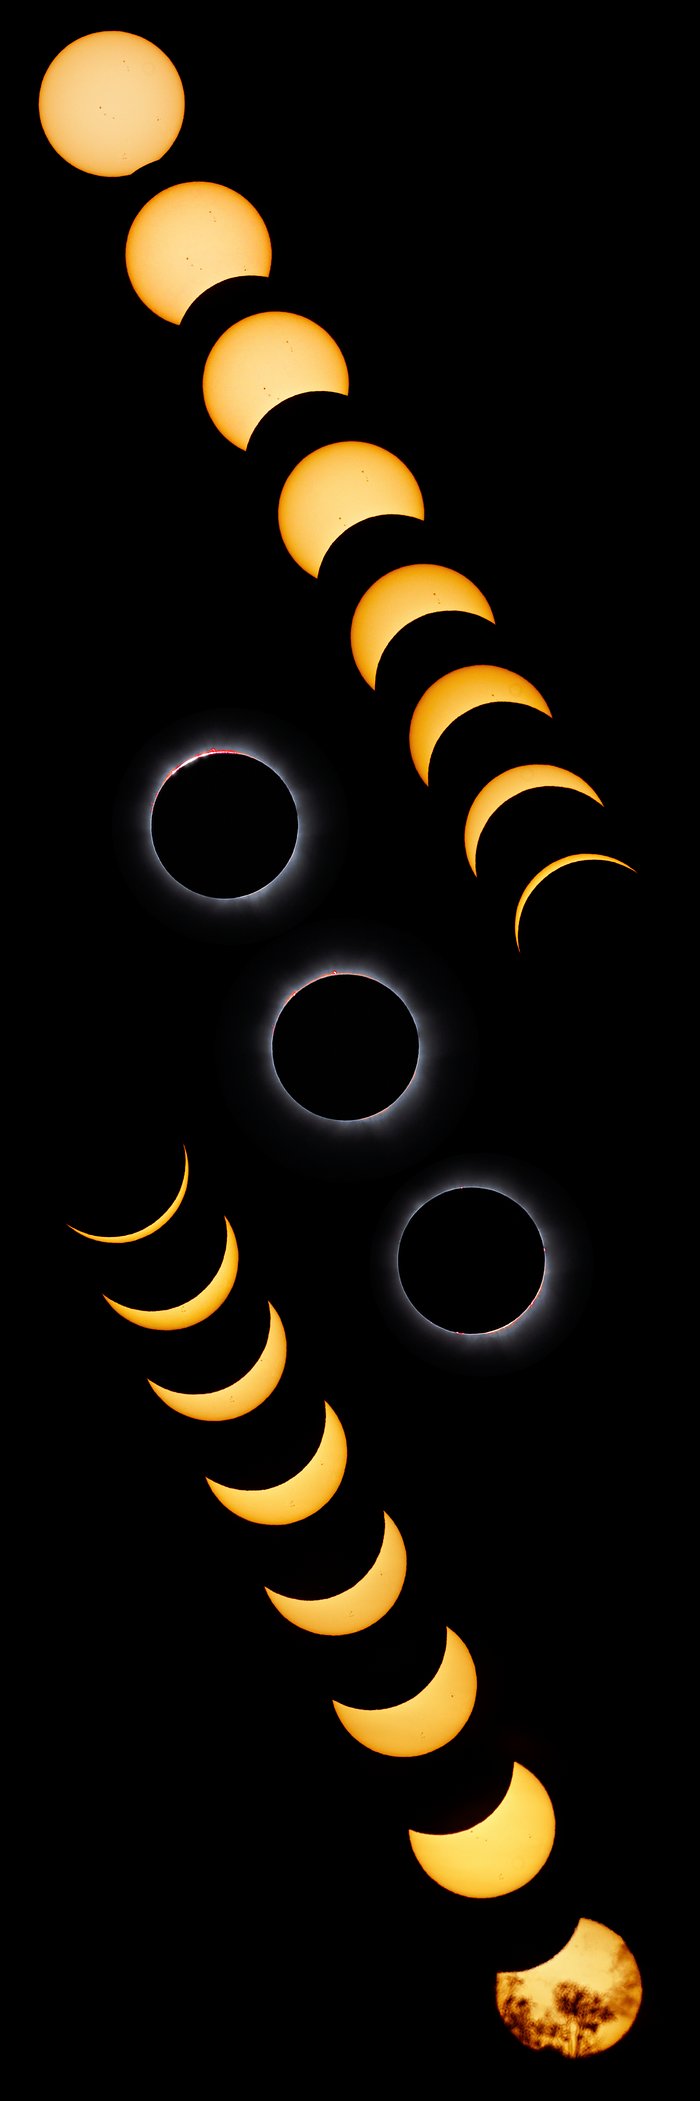 Kombinierte Ansicht der totalen Sonnenfinsternis vom 13. November 2012